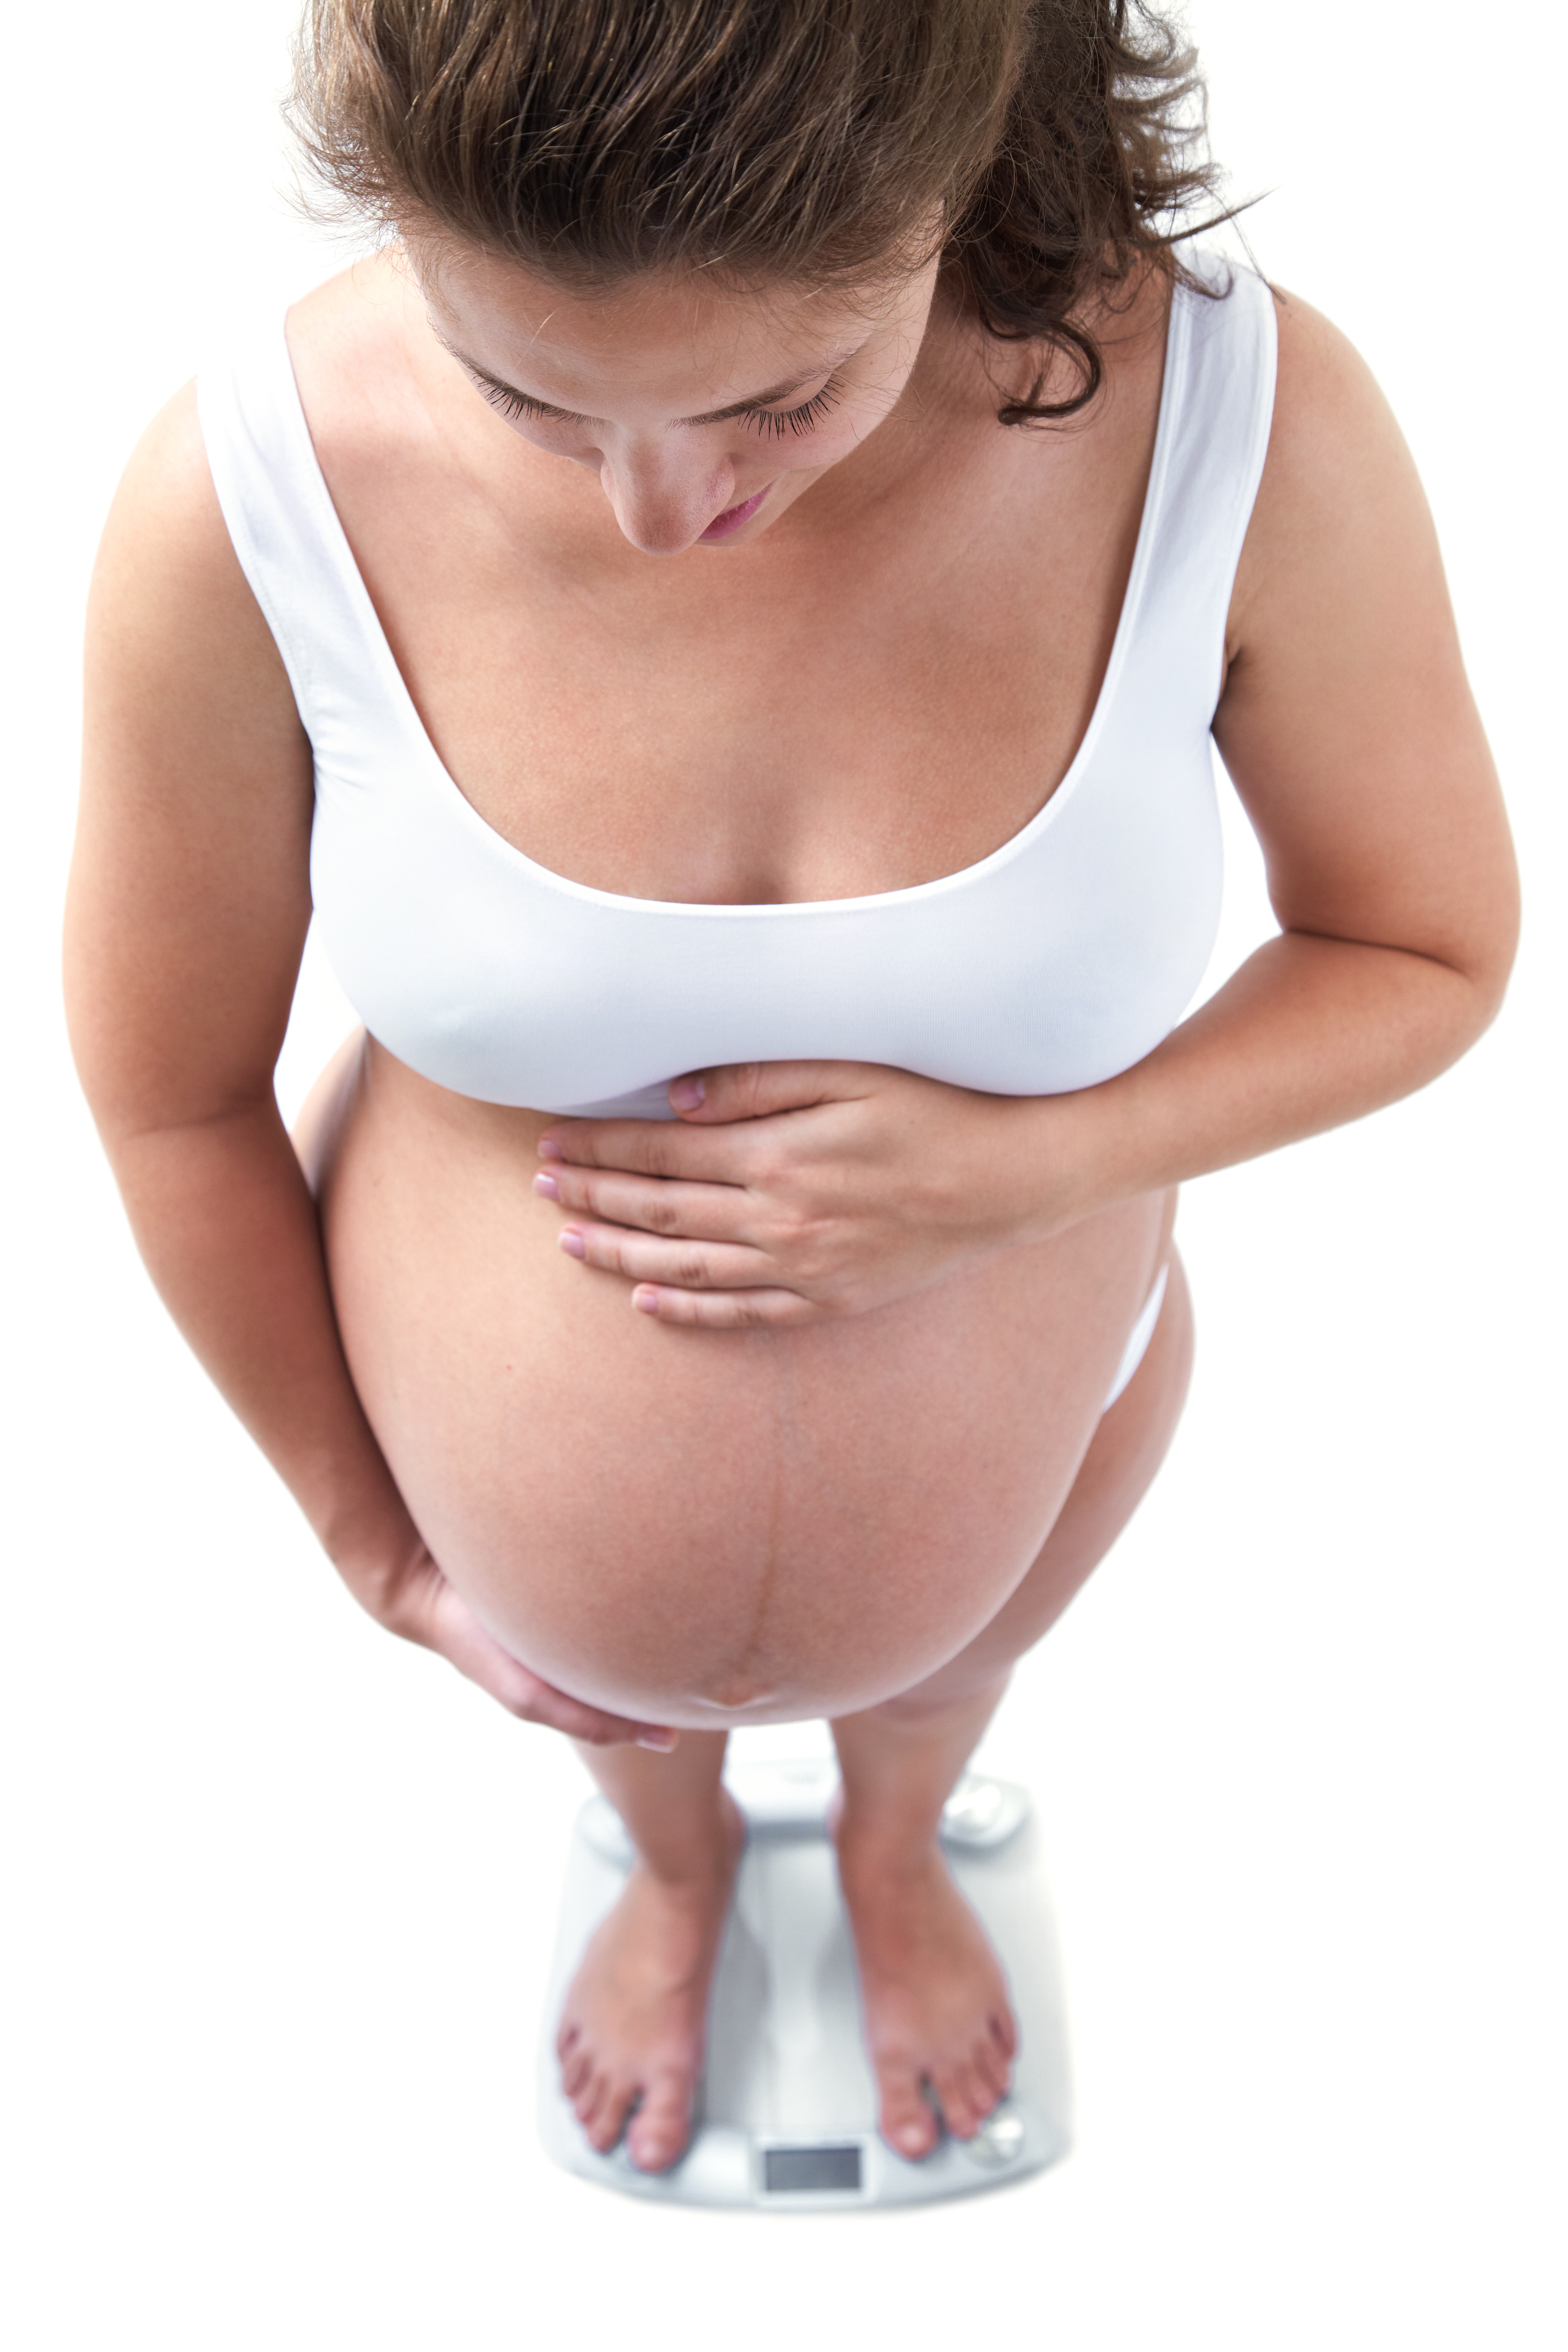 Un gain de poids élevé pendant la grossesse s’avère lié à un risque plus élevé de décès au cours des décennies qui suivent (Visuel Adobe Stock 51640333)